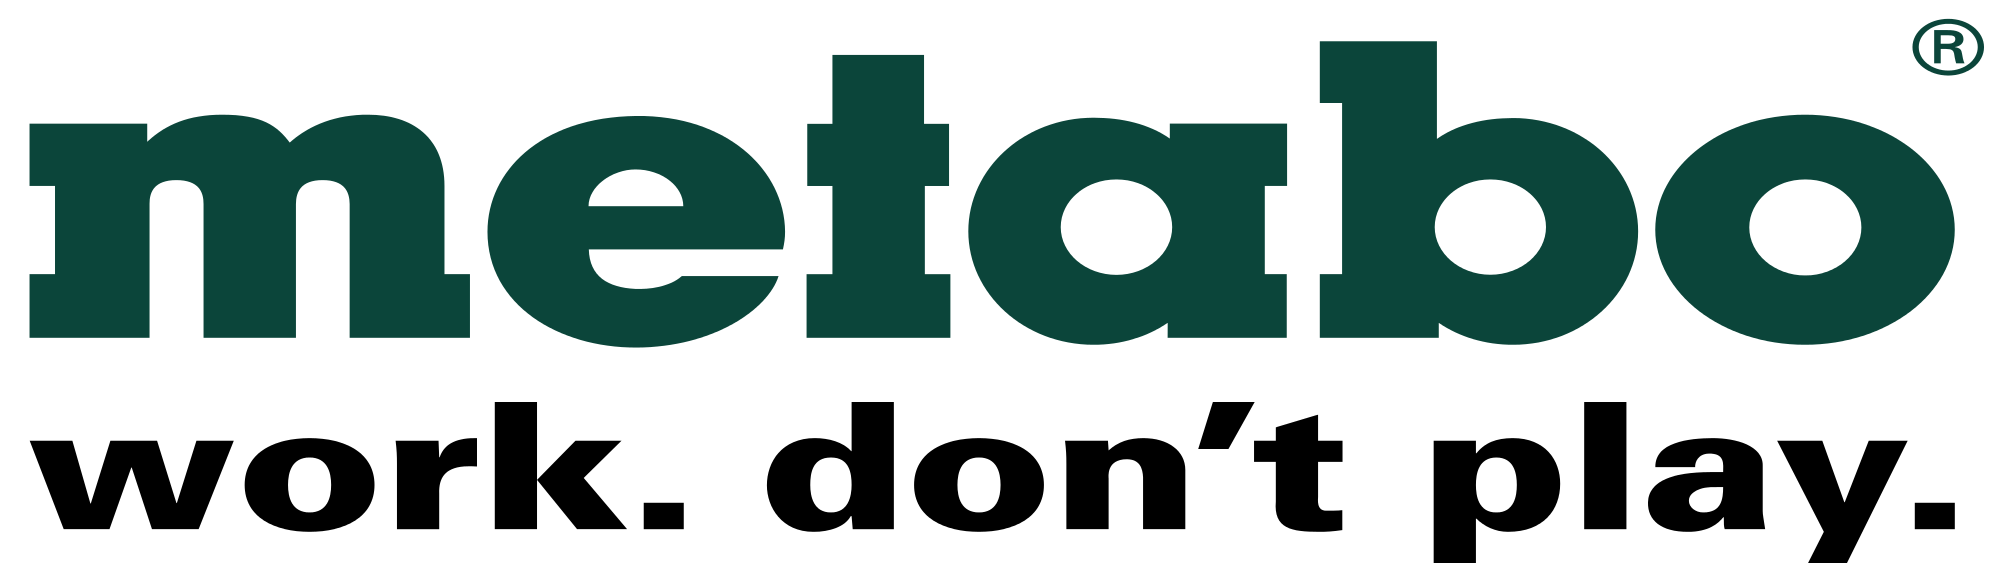 Metabo_logo.svg